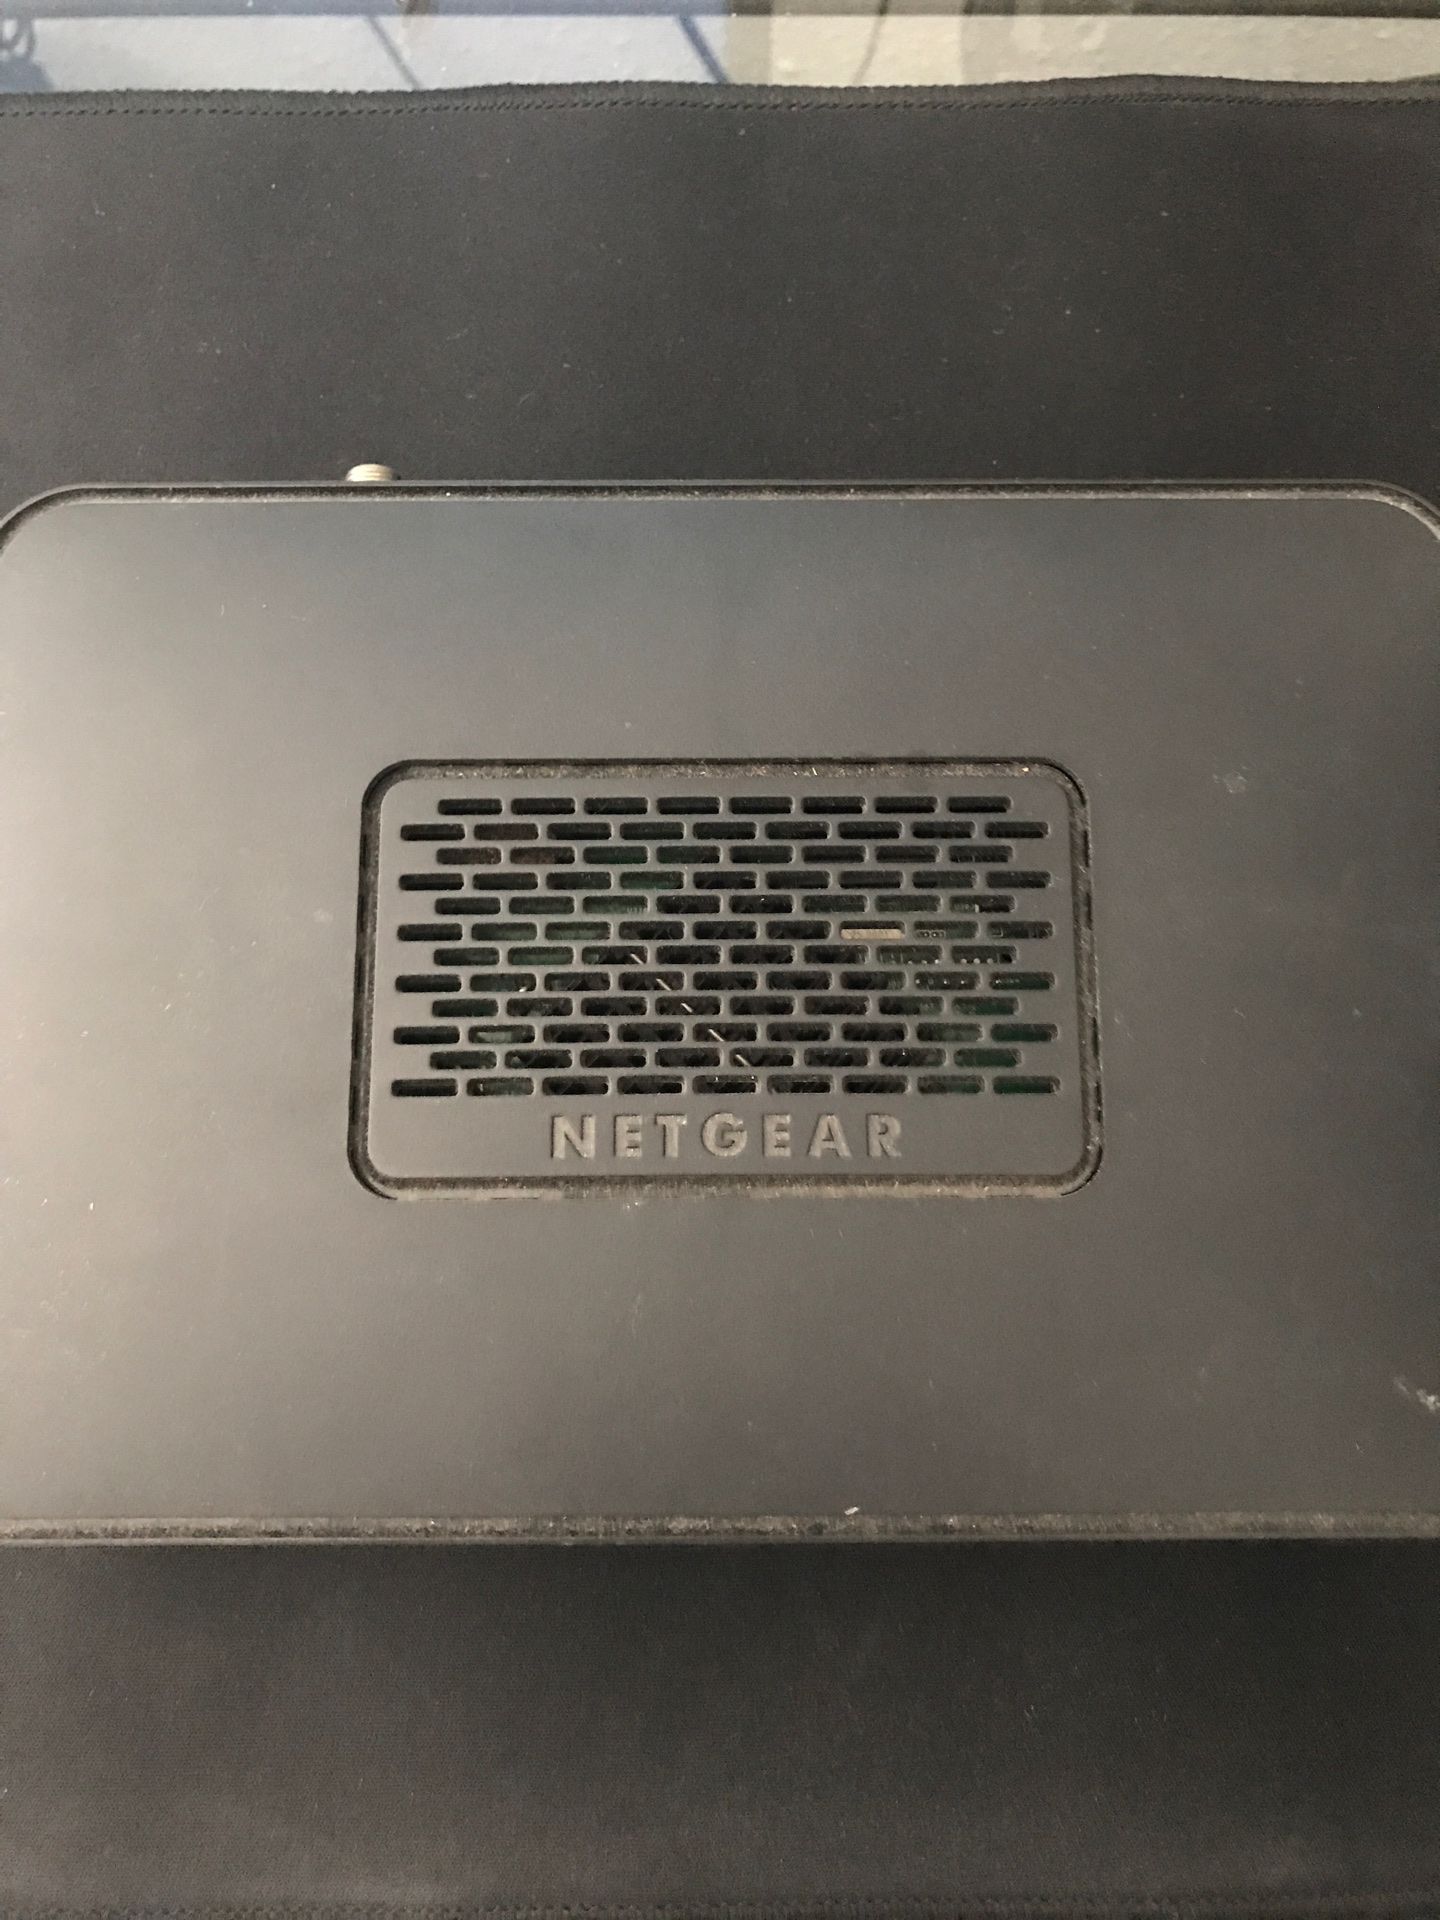 Netgear router/modem for cheap